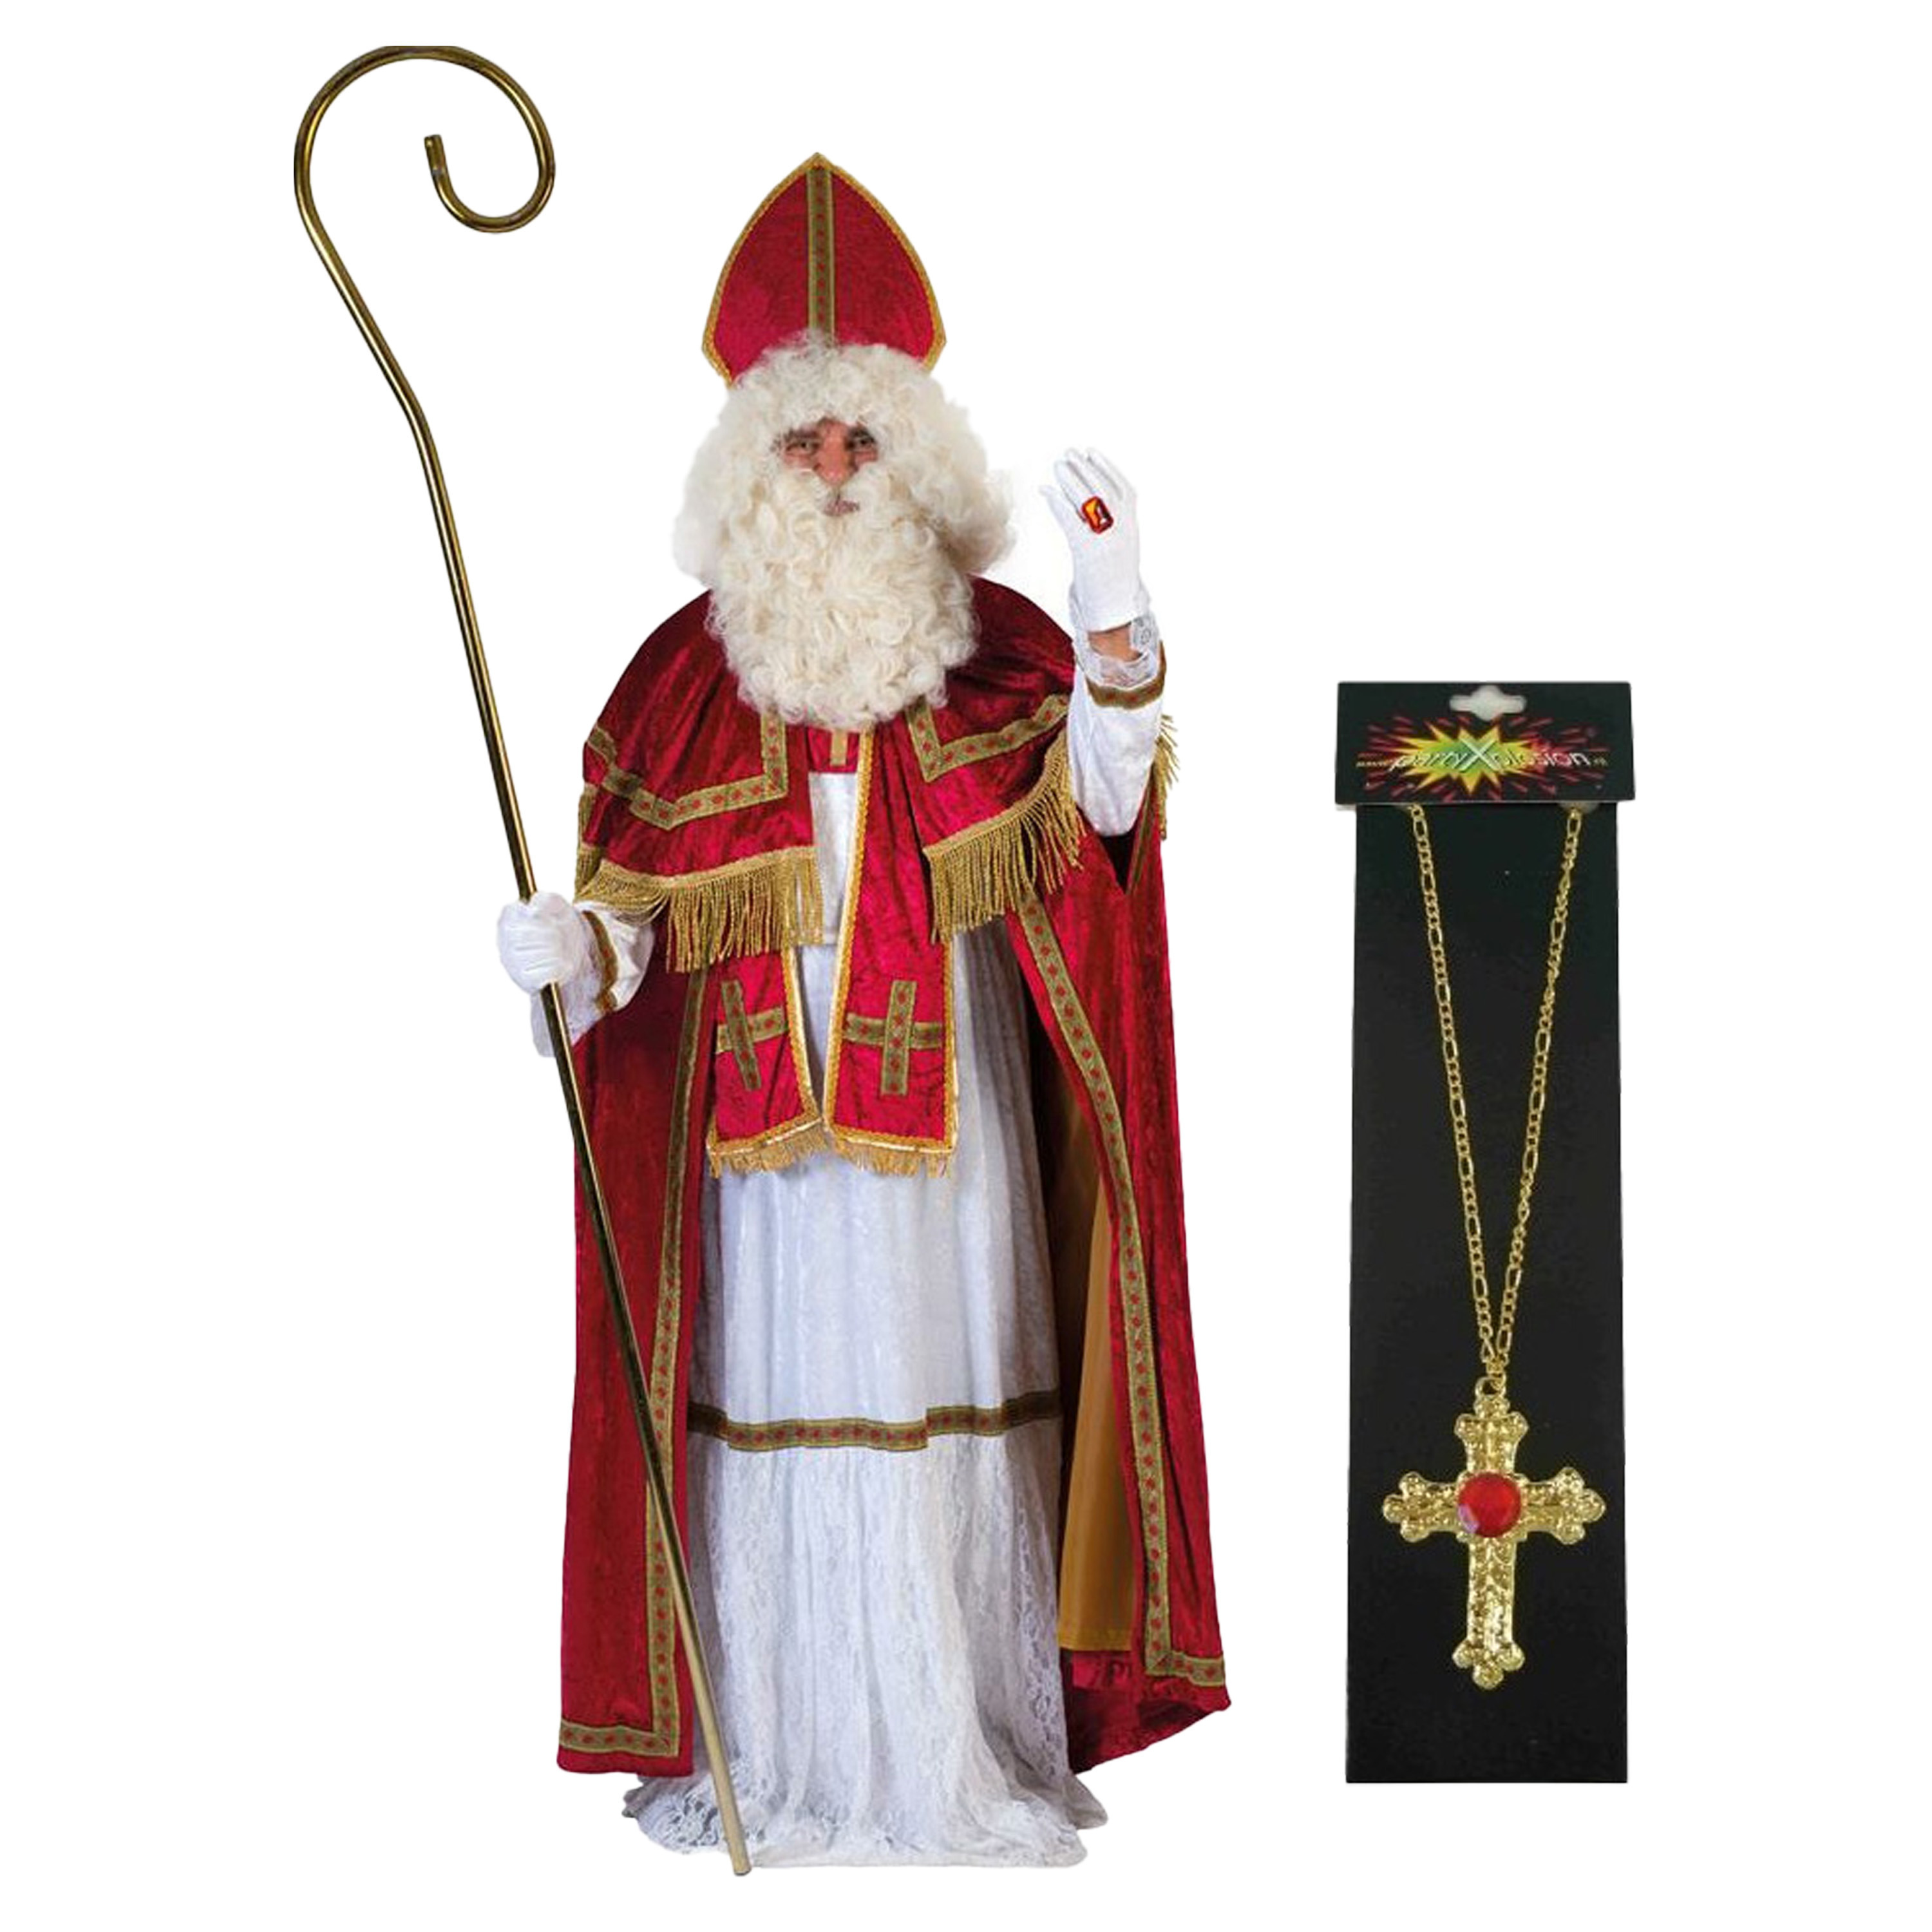 Sinterklaas kostuum - inclusief kruis ketting met rode steen